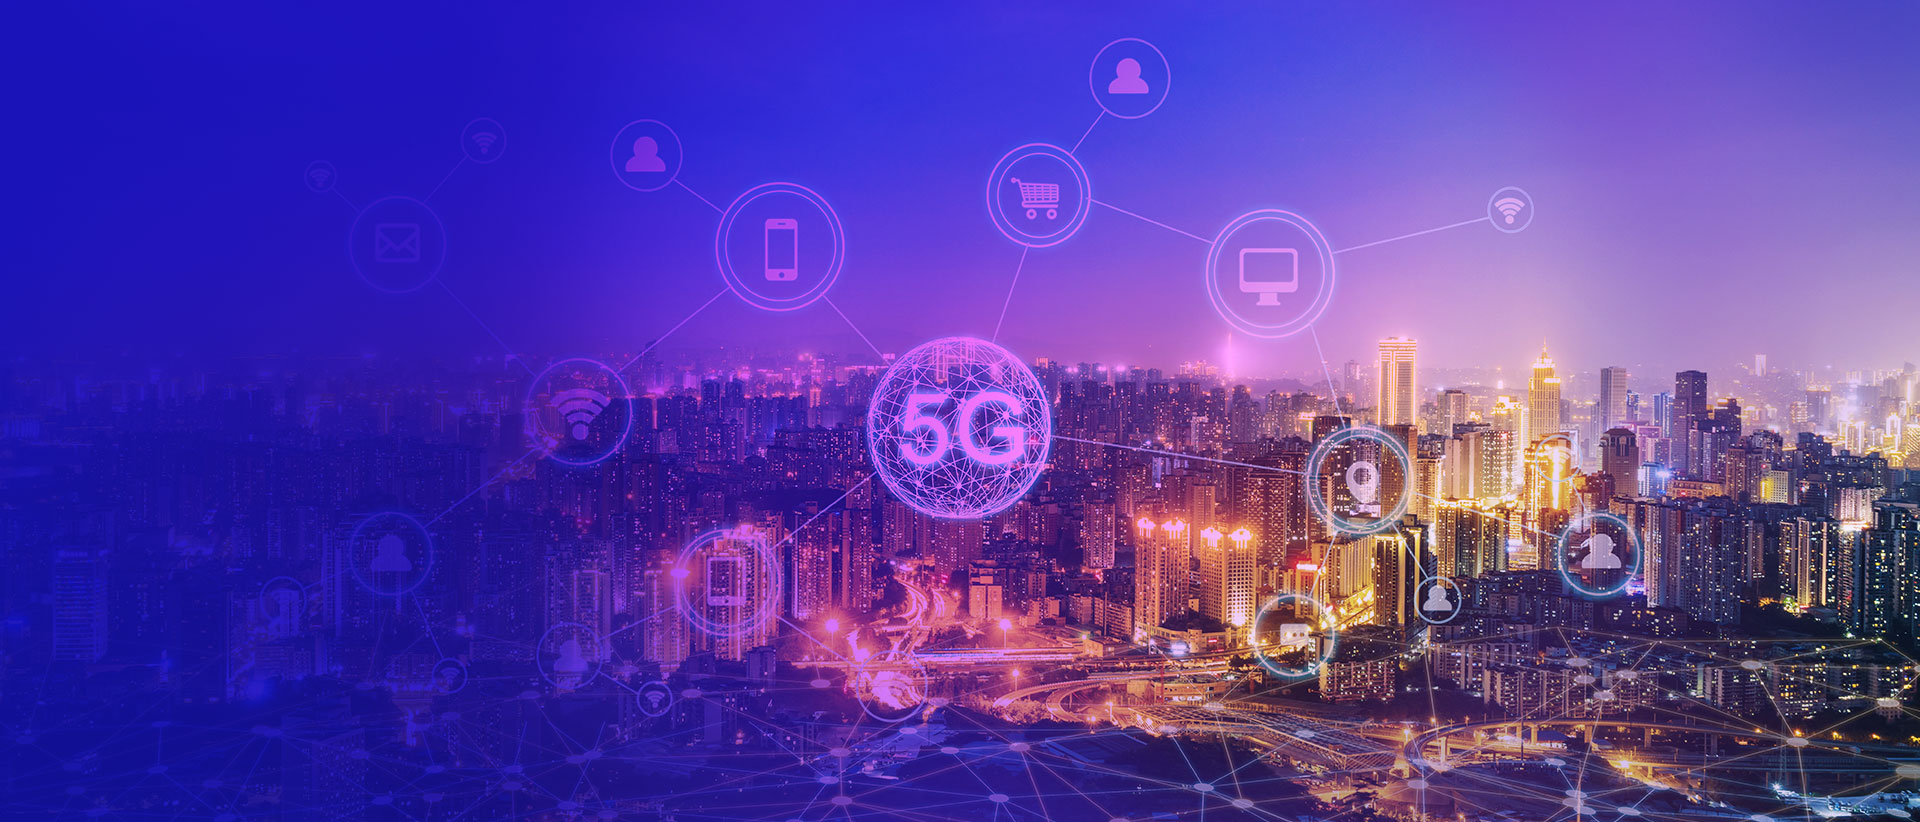 5G – Driving Industrial Digital Transformation